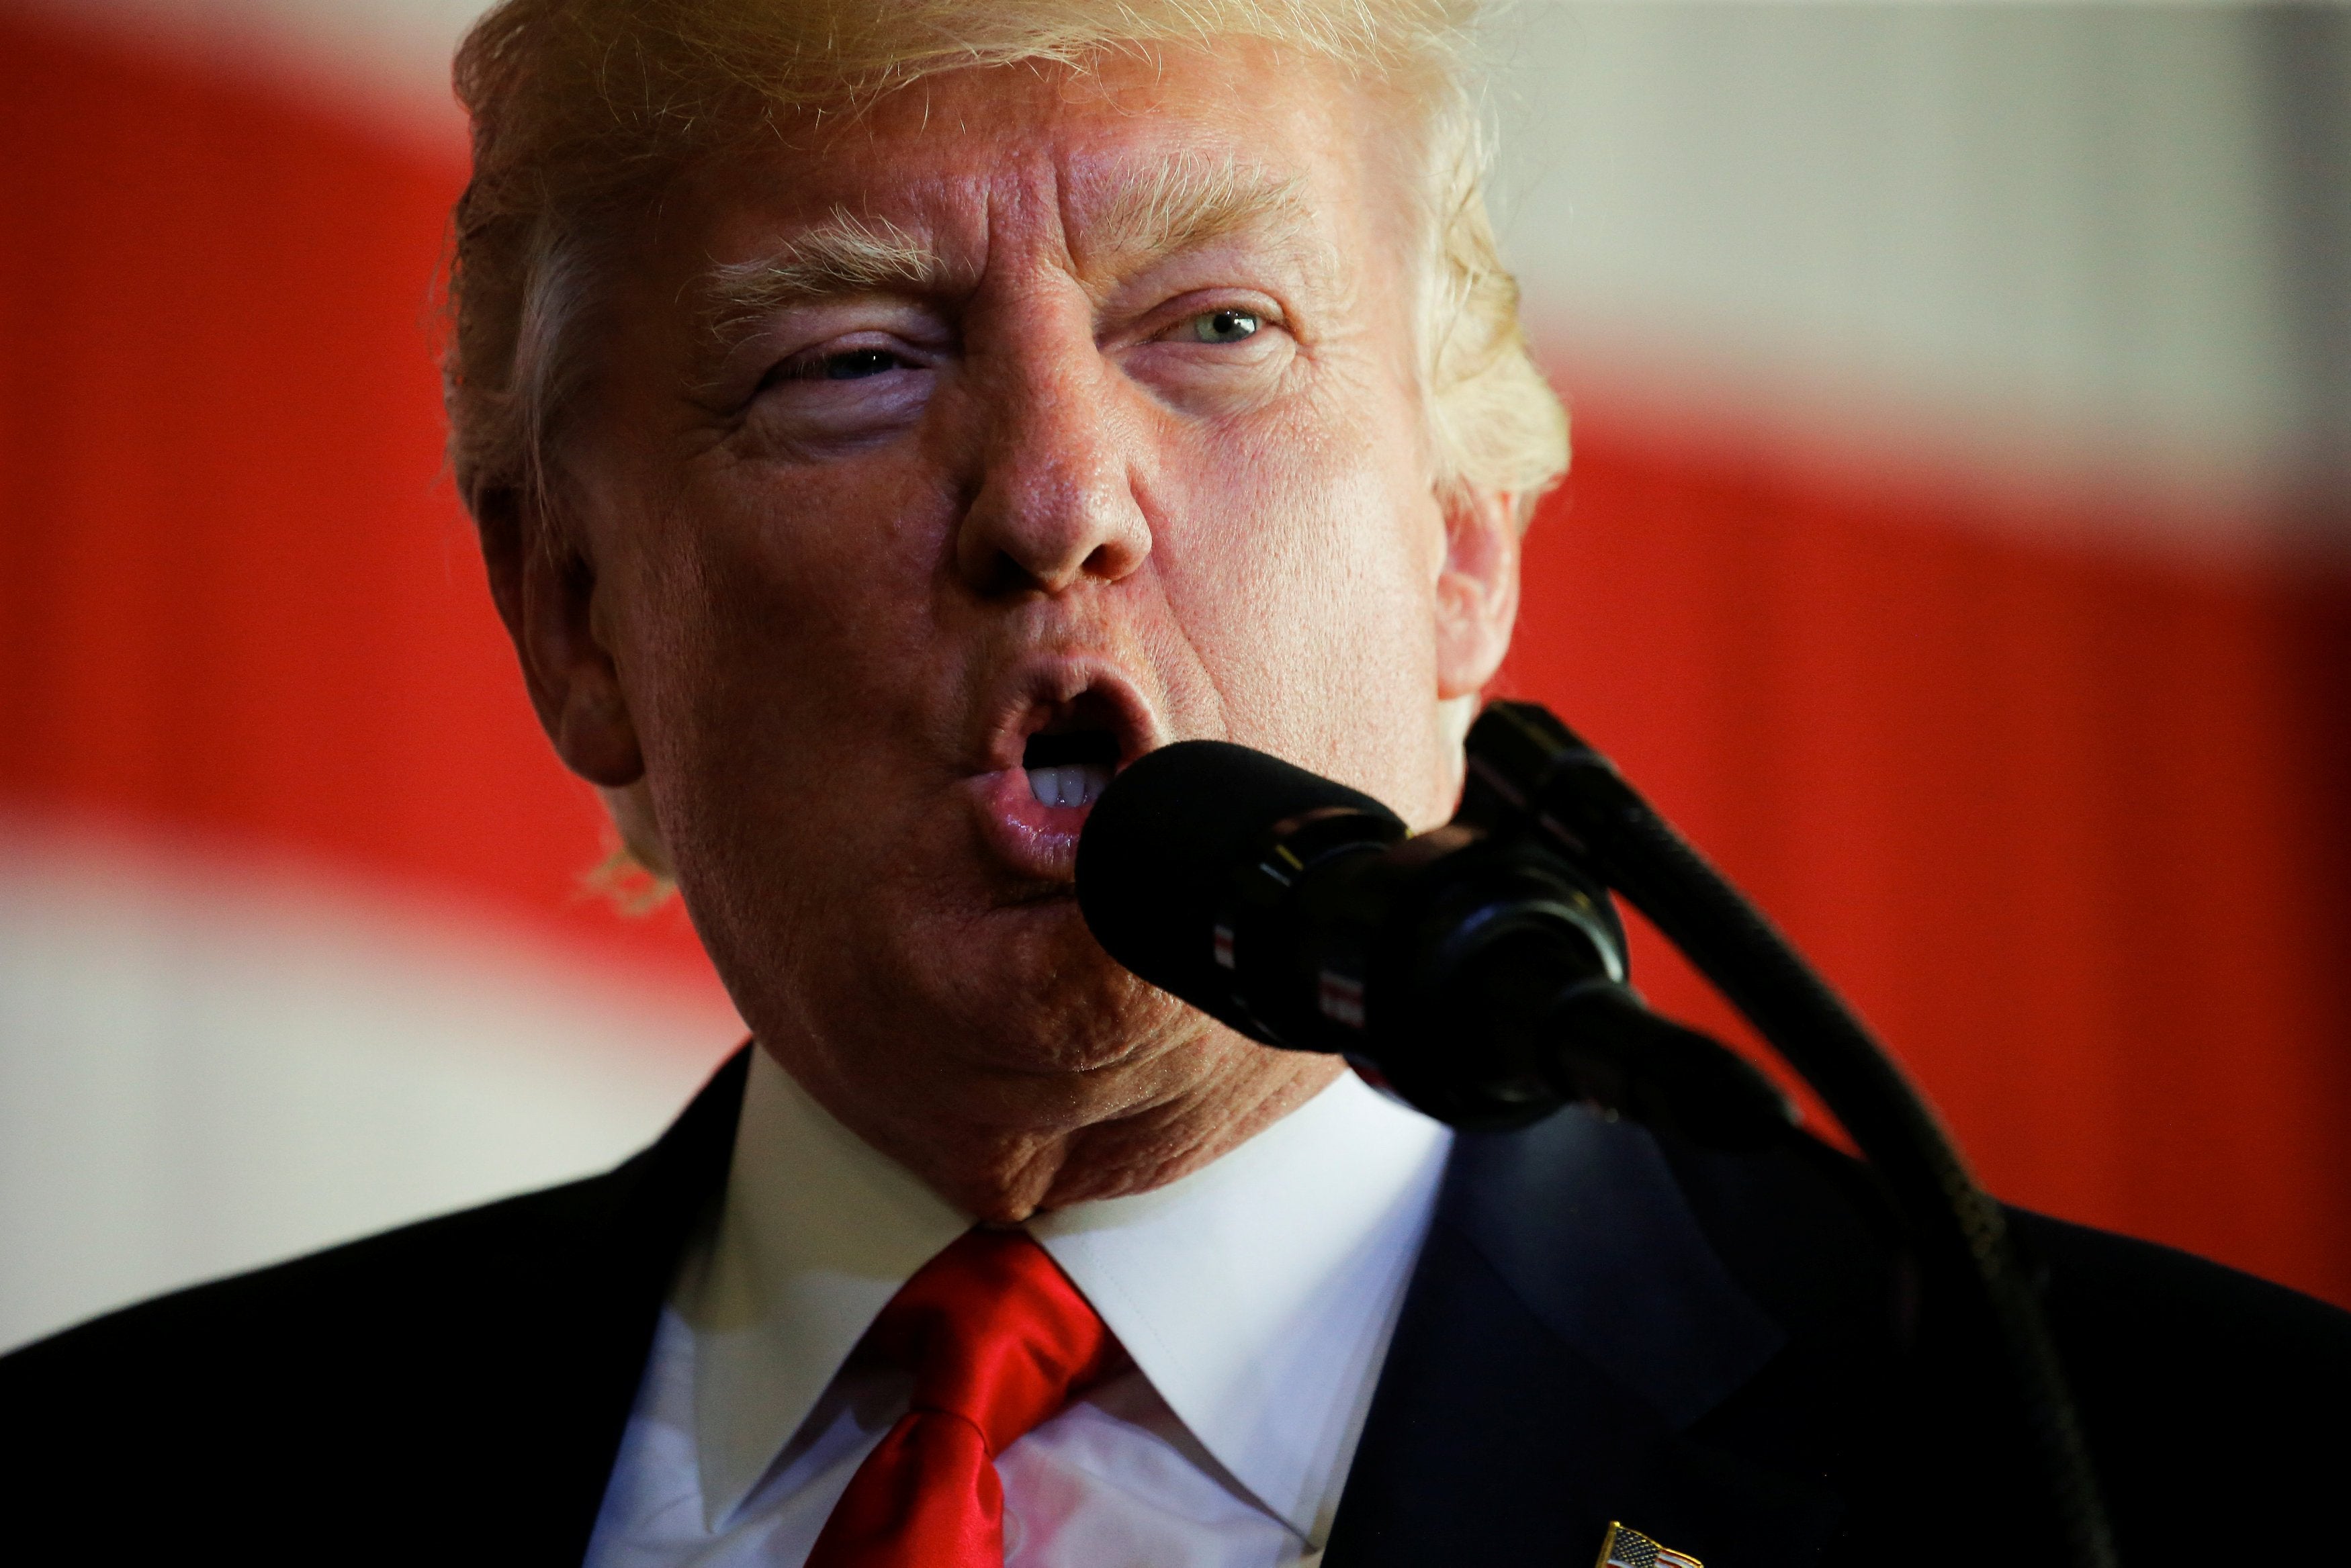 President Trump Calls His First Trip Abroad a ‘Home Run’